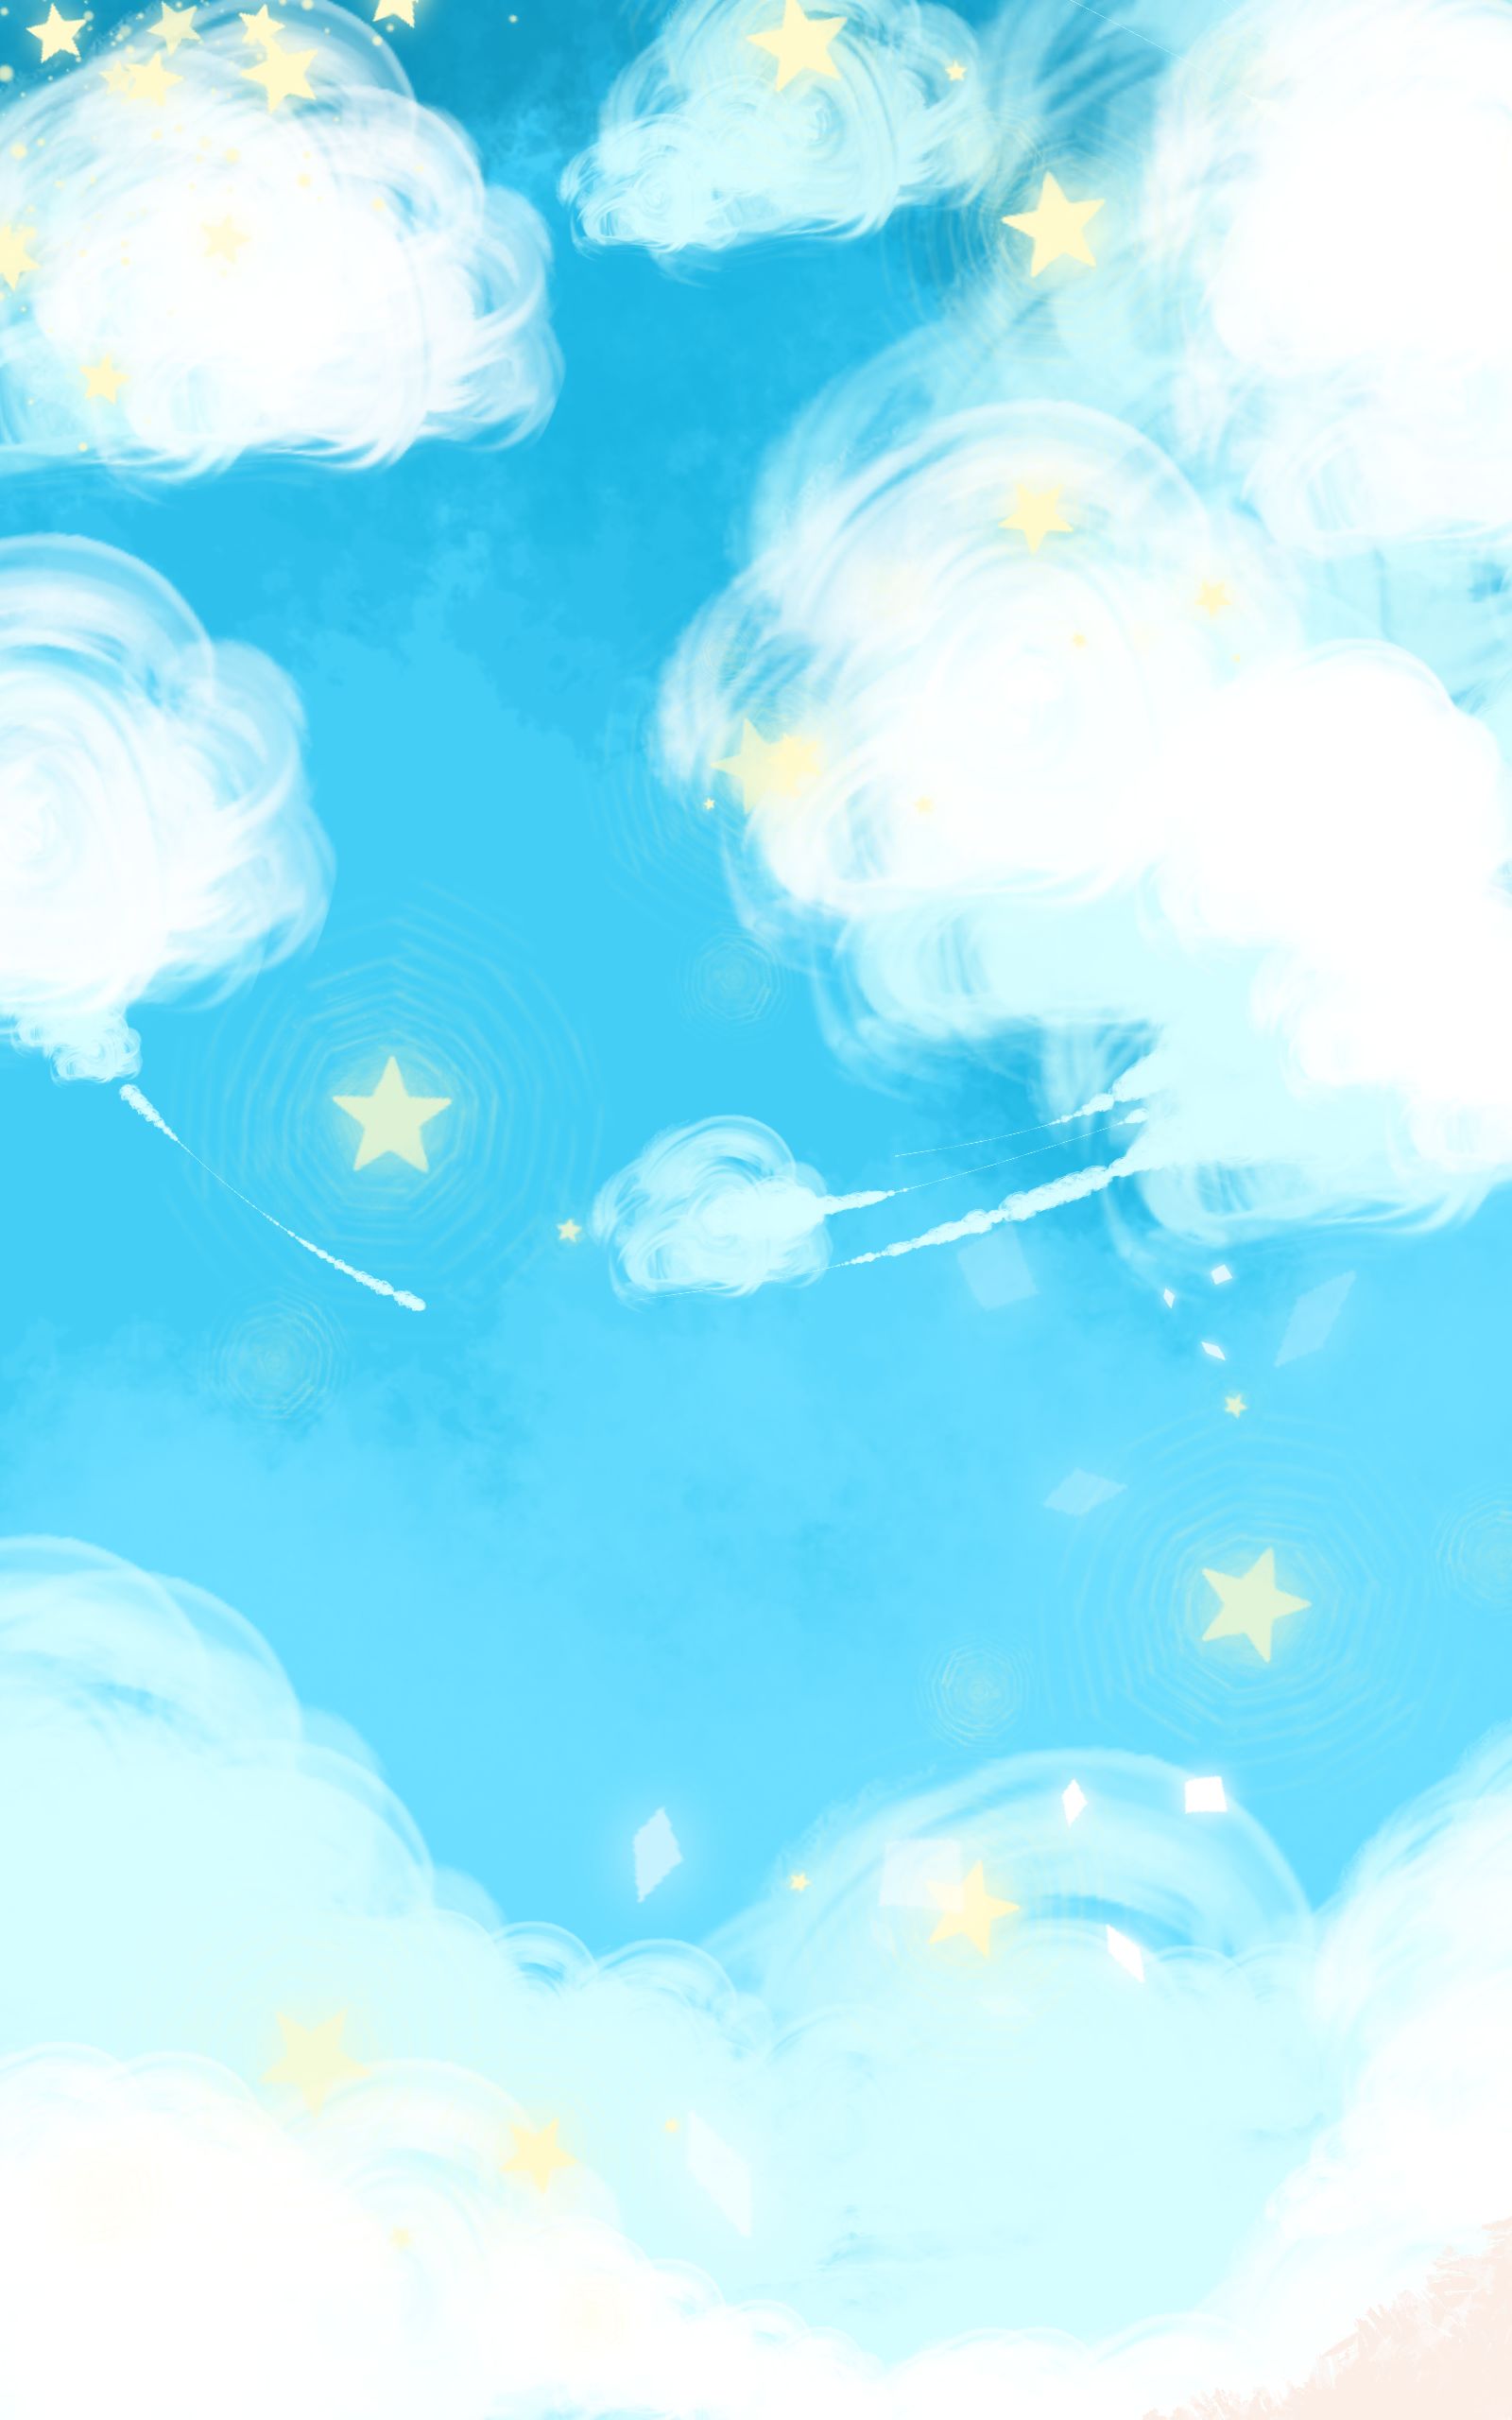 软绵绵的云朵插画图片壁纸